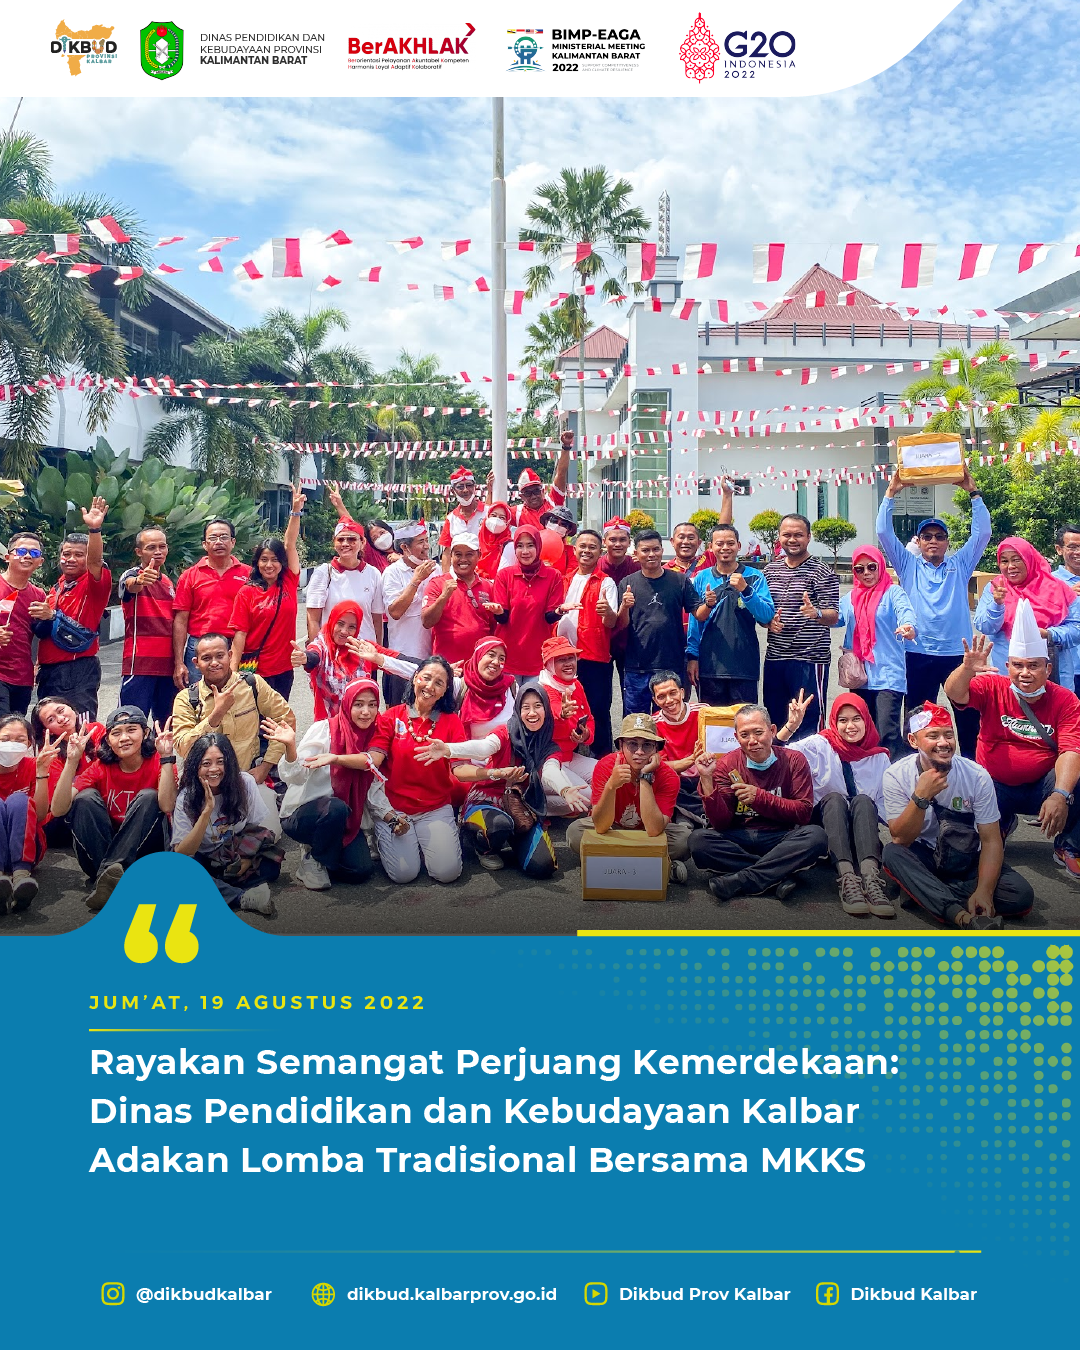 Rayakan Semangat Perjuang Kemerdekaan: Dinas Pendidikan dan Kebudayaan Kalbar Adakan Lomba Tradisional Bersama MKKS